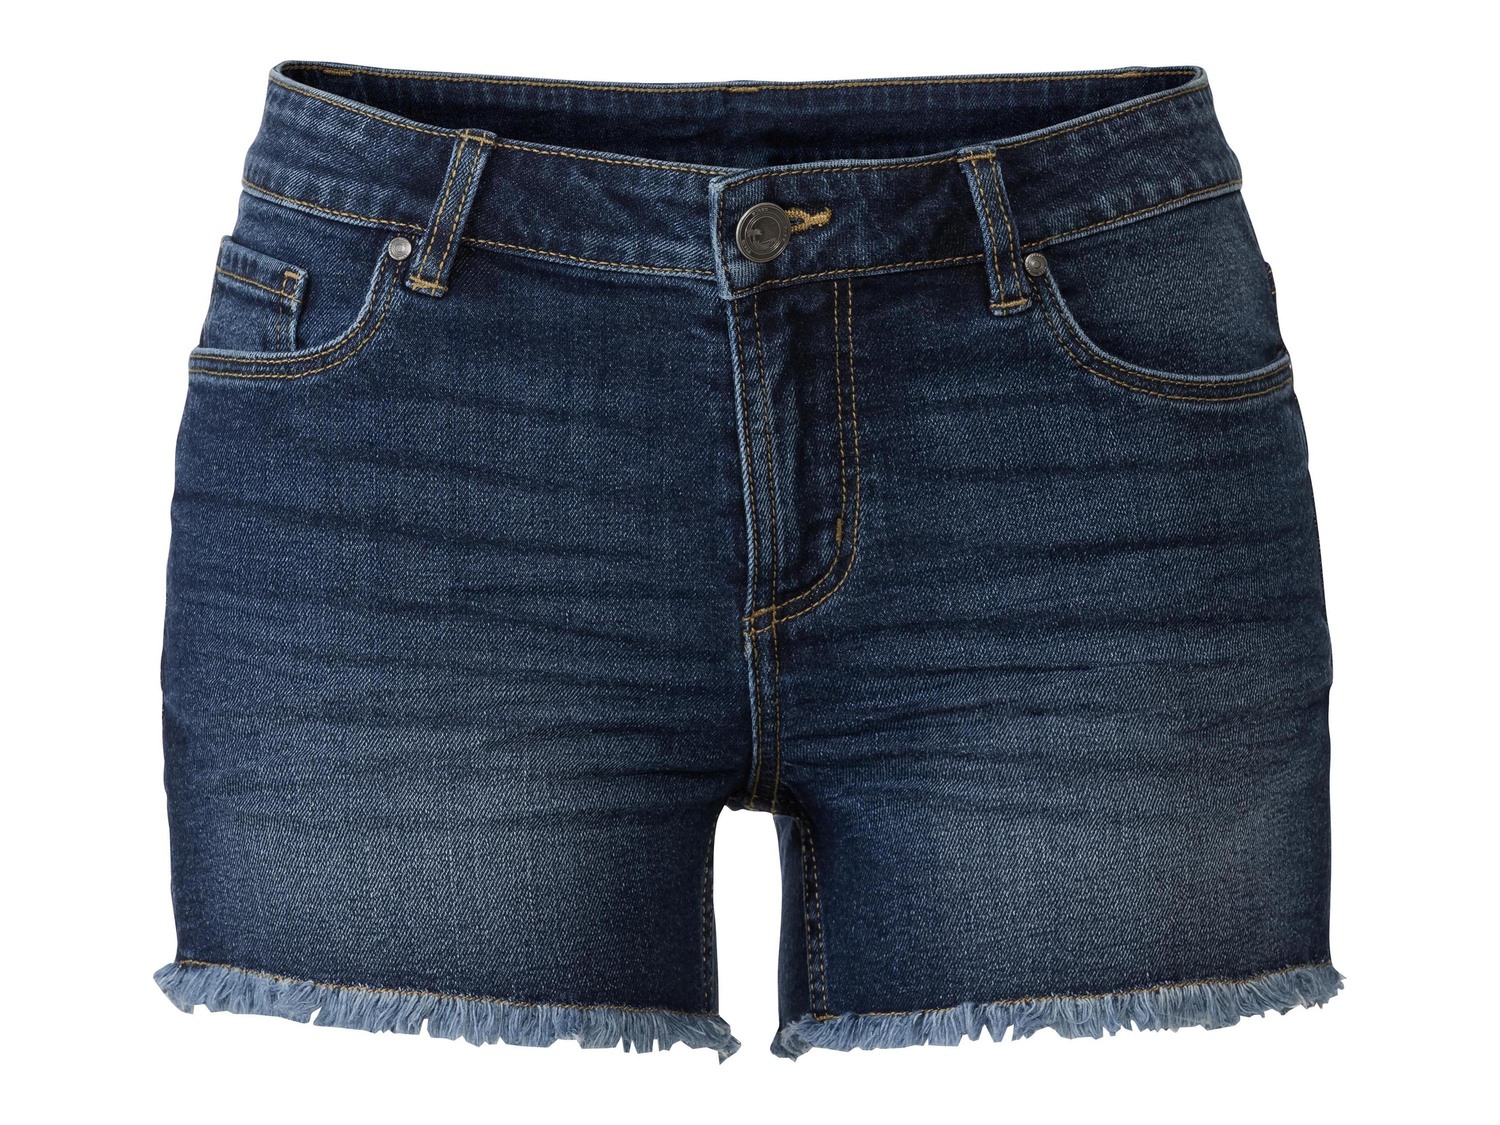 Shorts in jeans da donna Esmara, prezzo 6.99 &#8364;  
Misure: 38-46